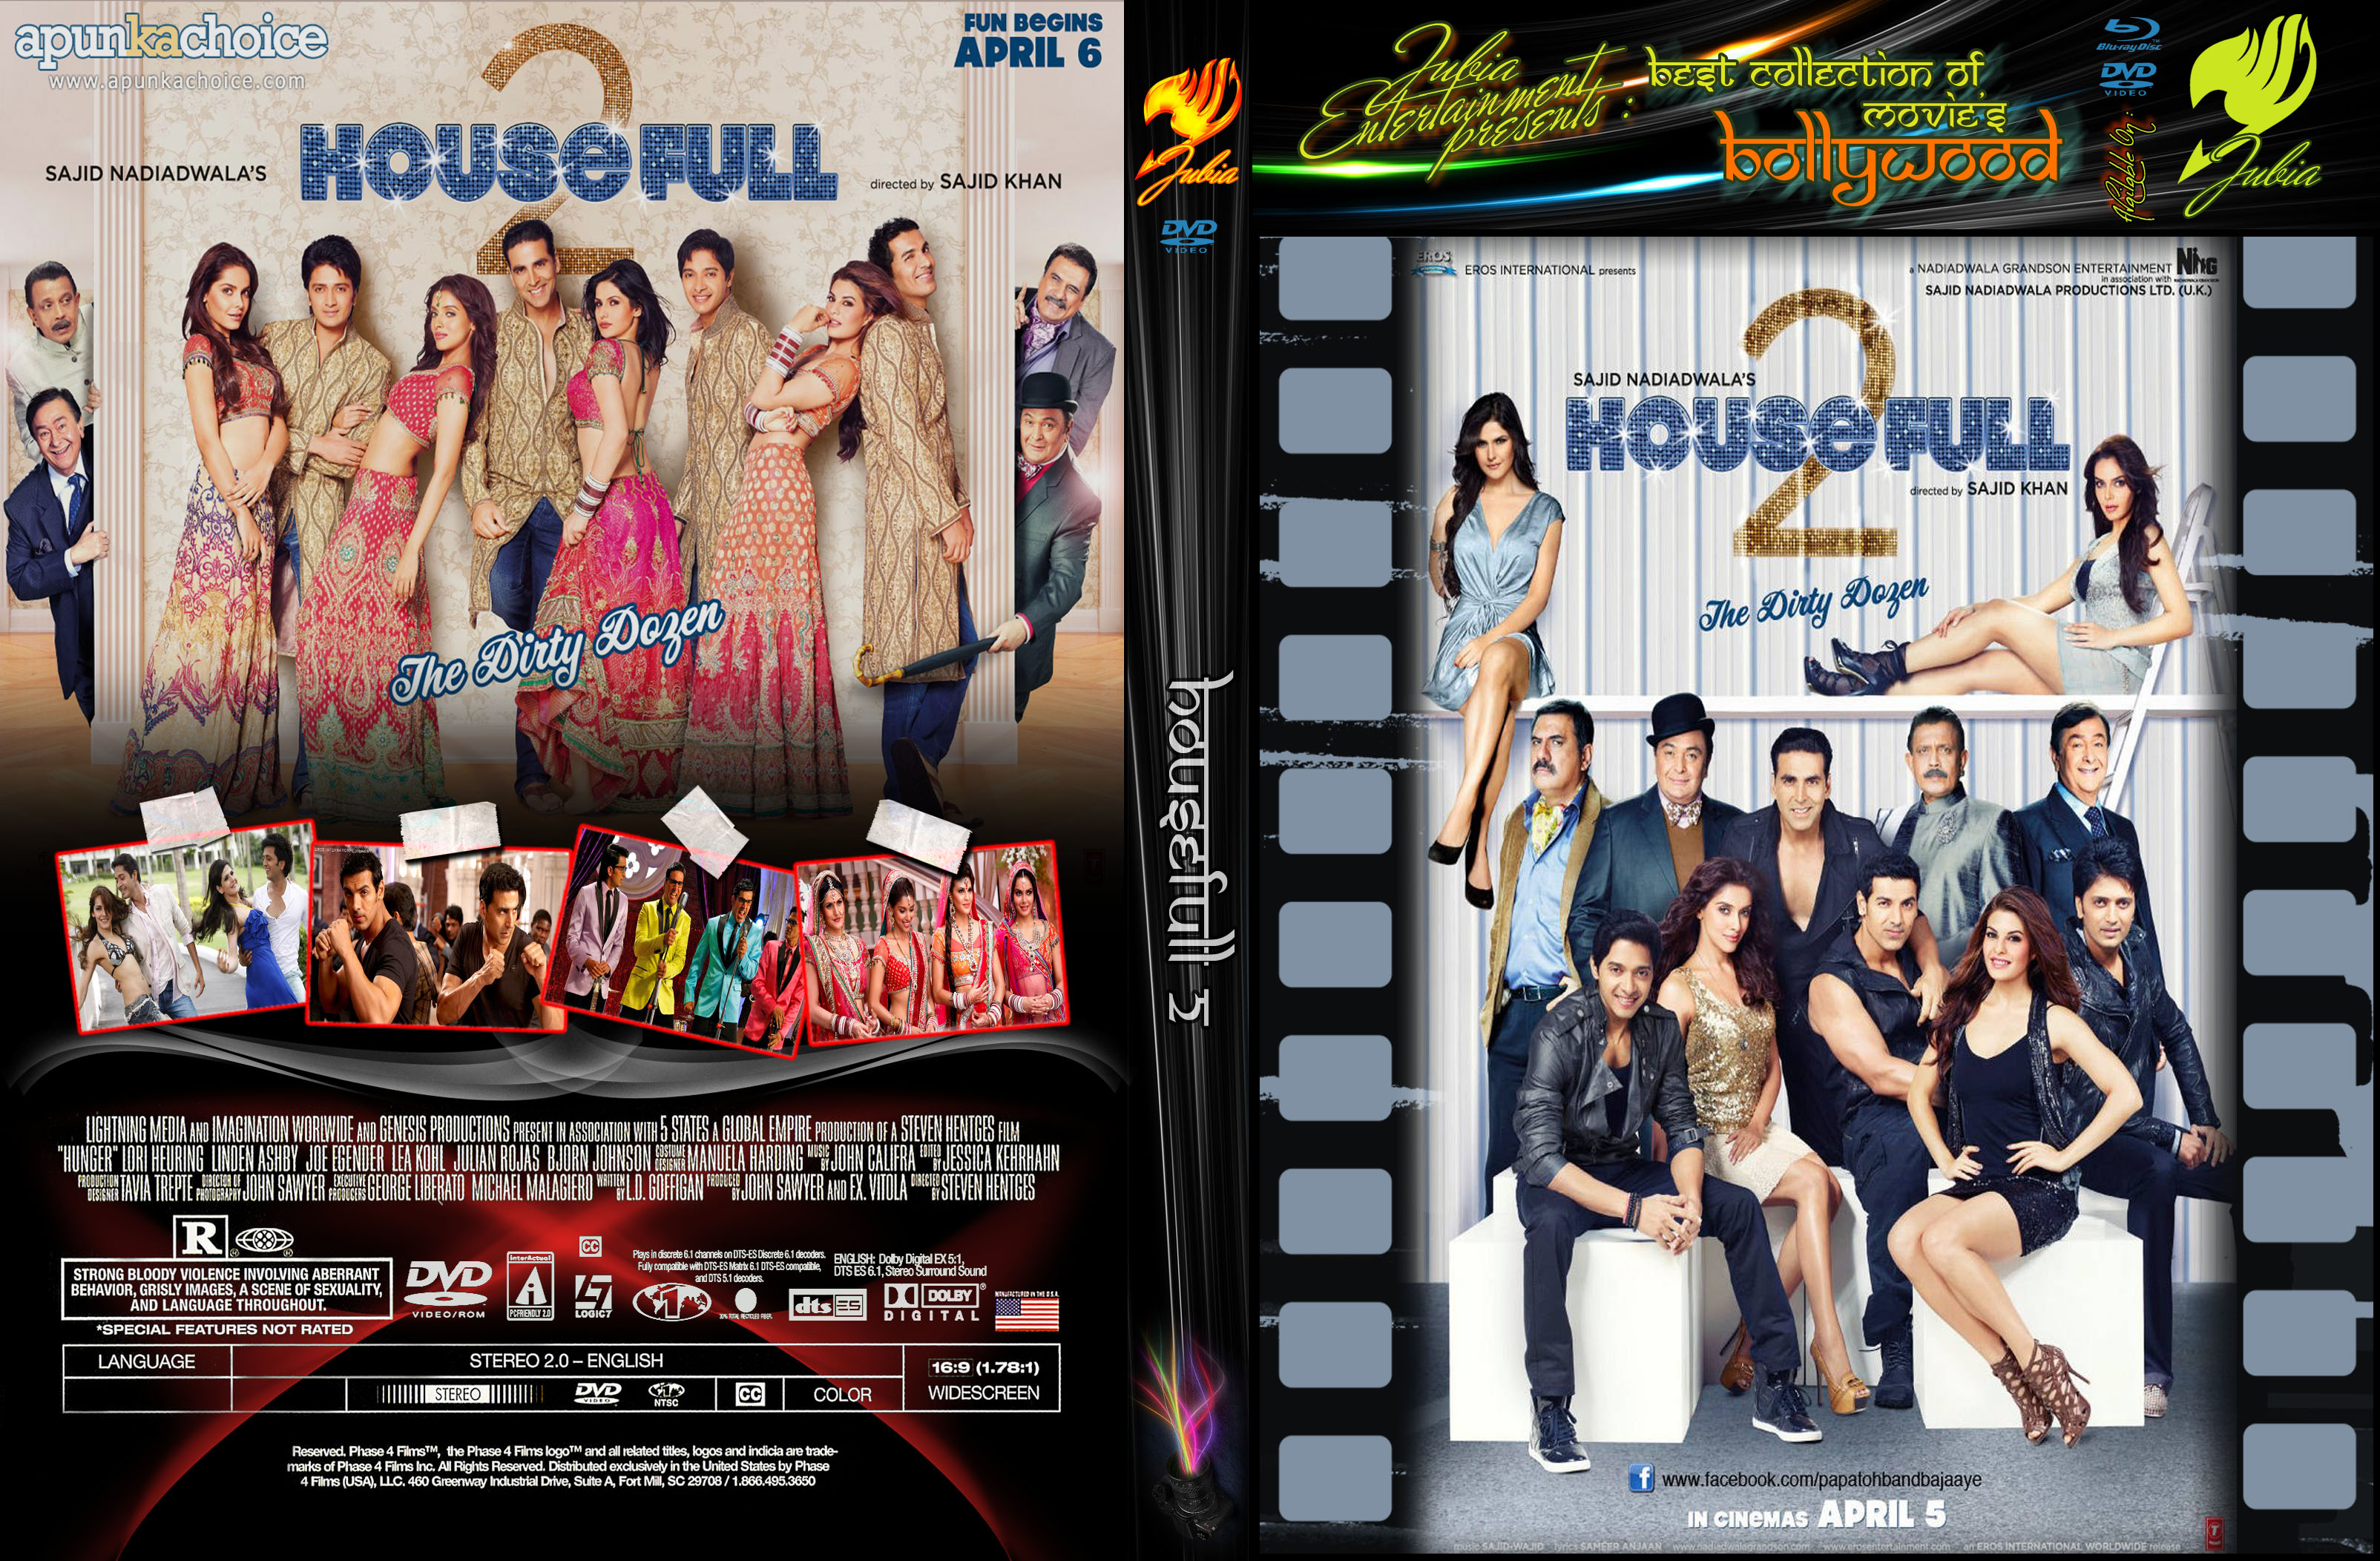 housefull 2 movie poster